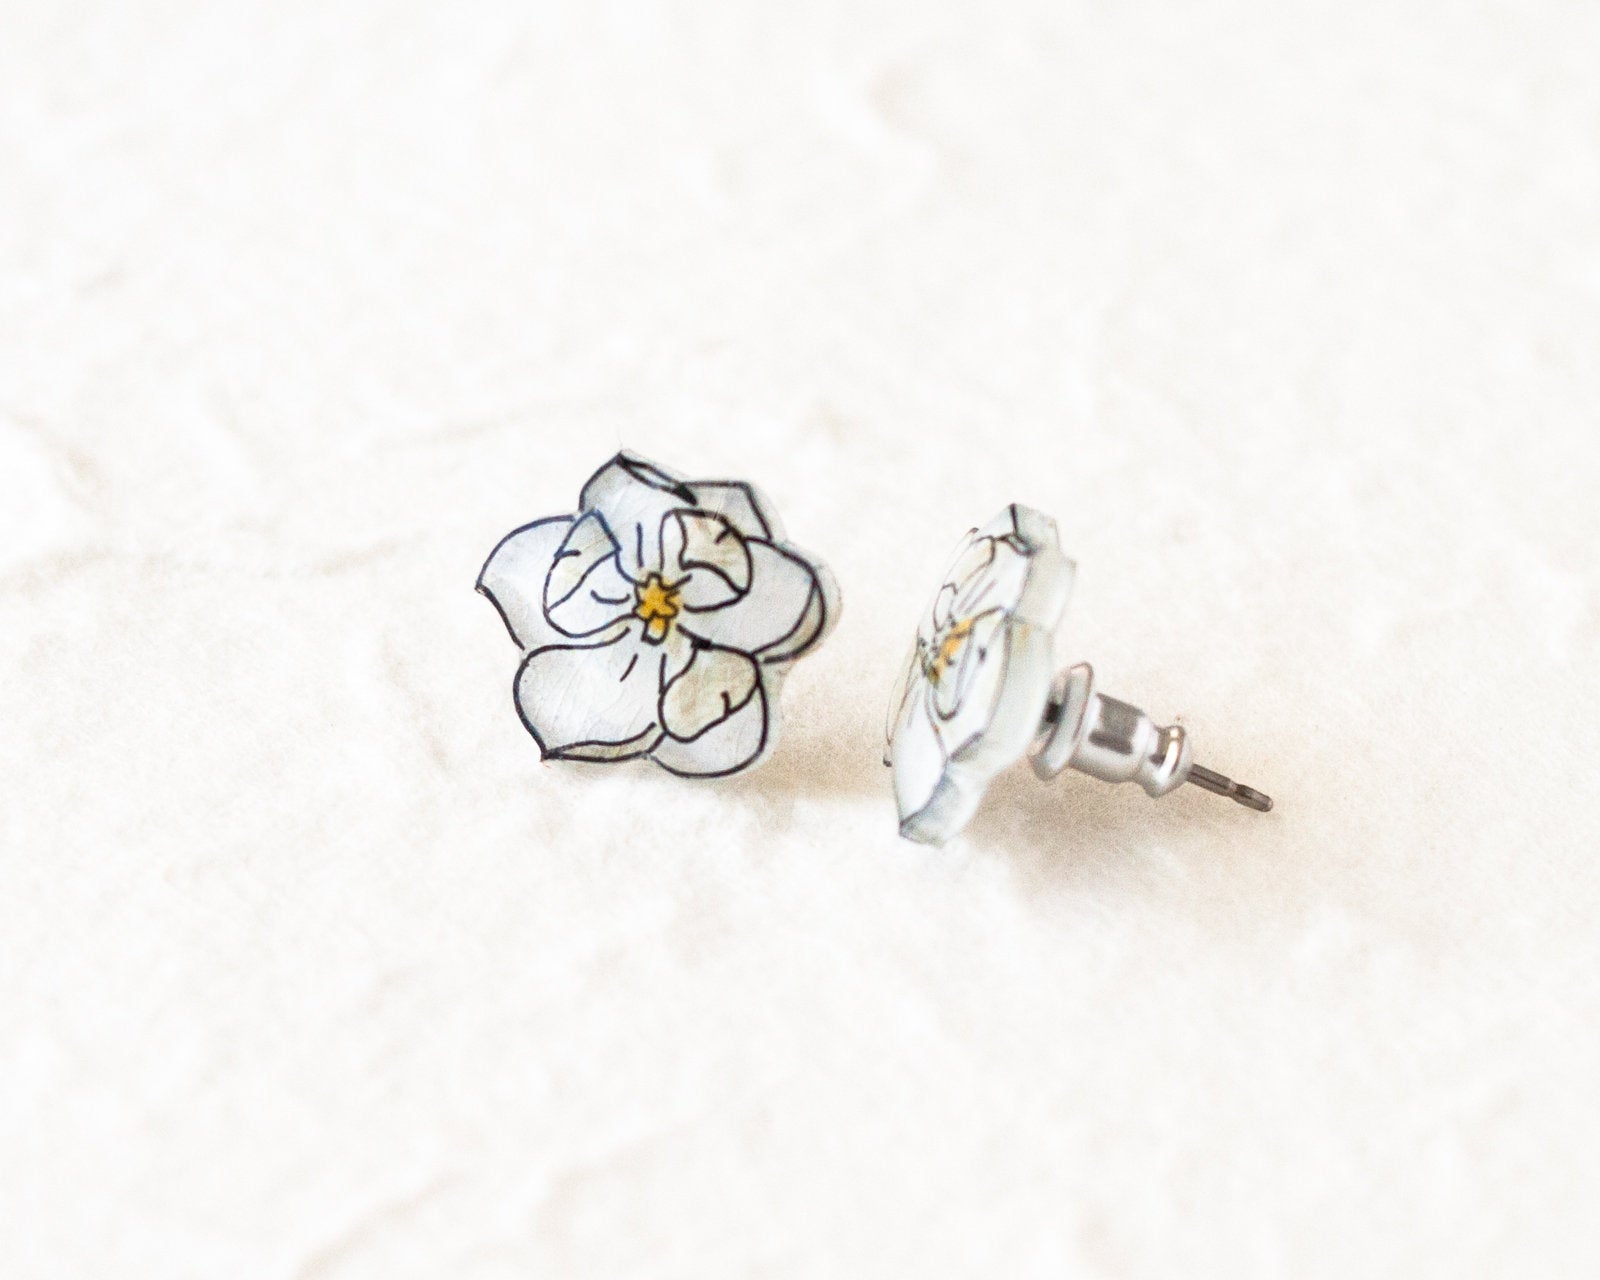 White Magnolia Flower Stud Earrings